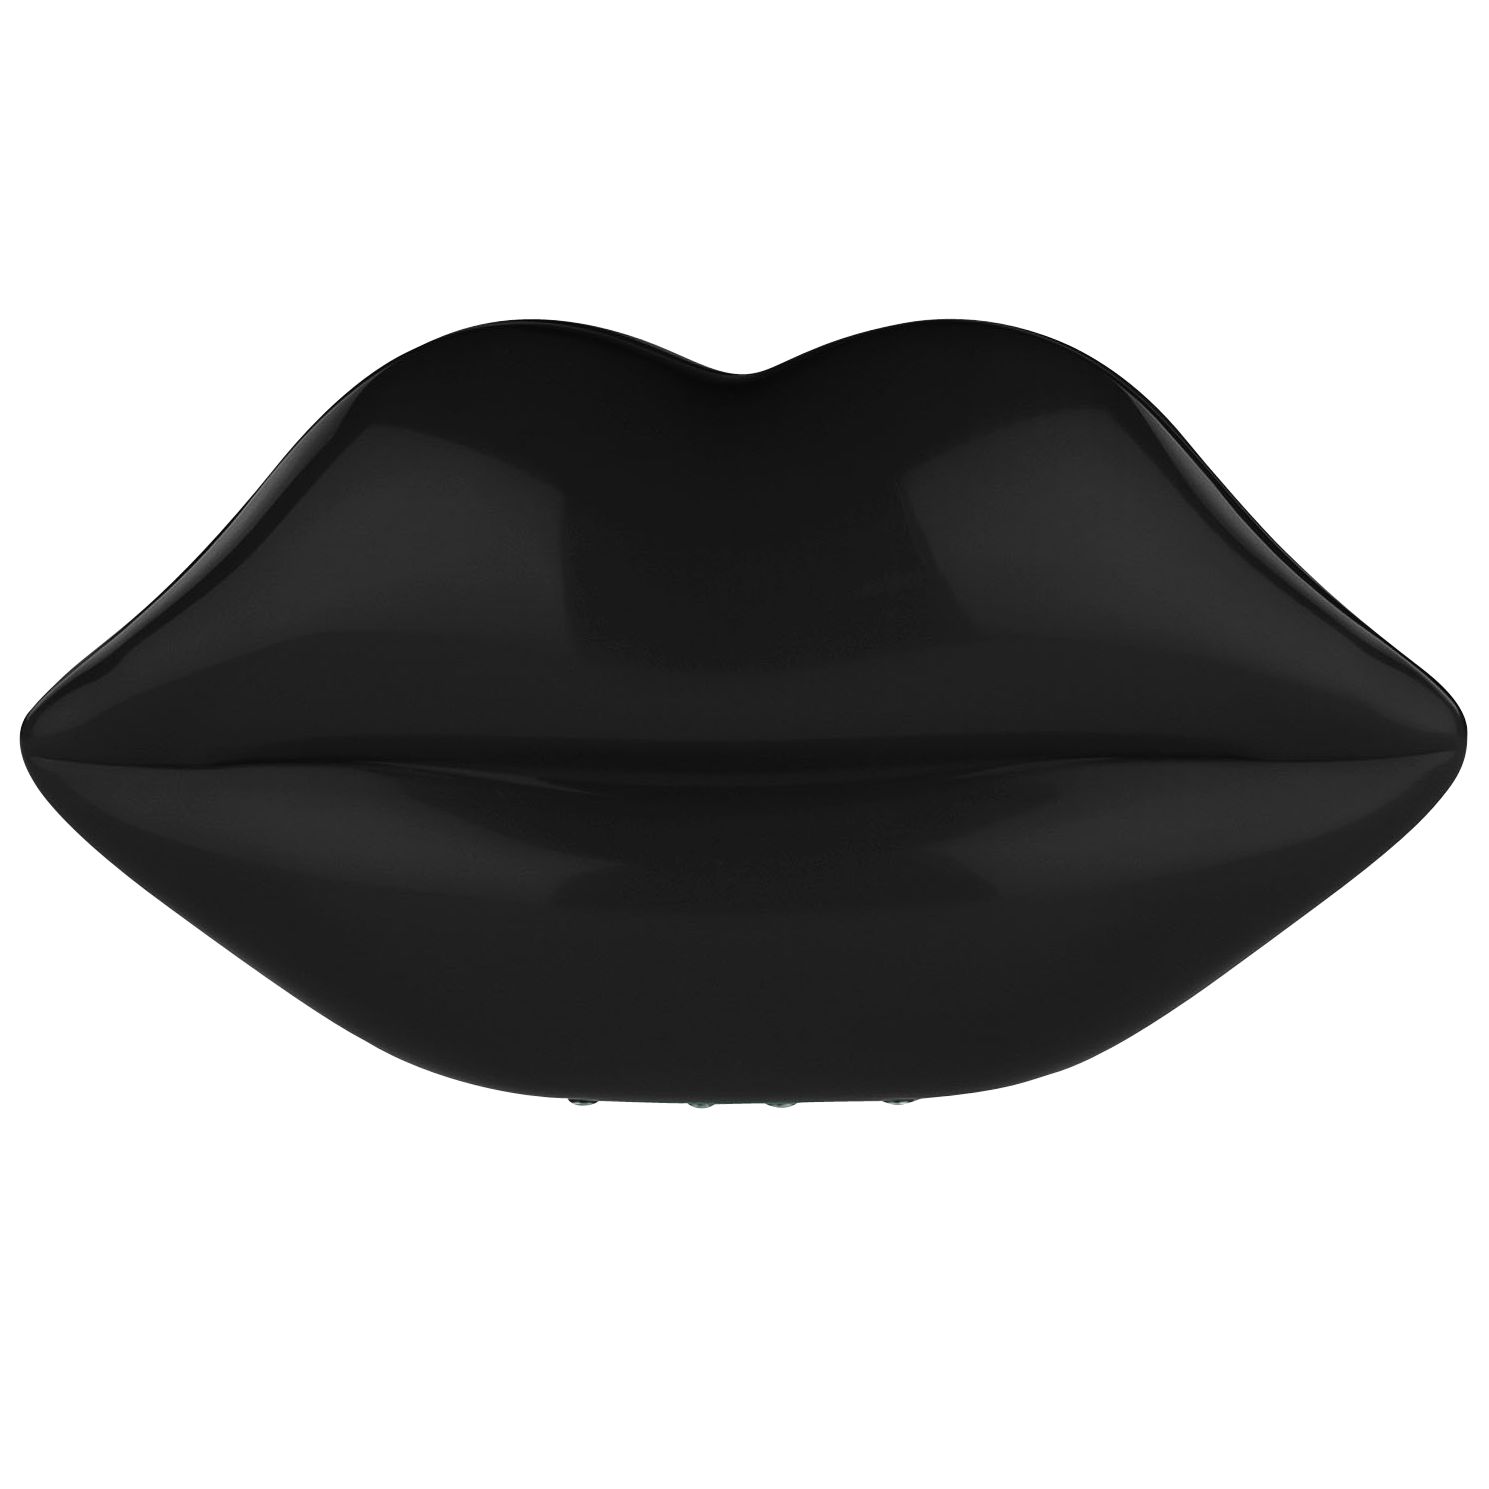 Lulu Guinness Perspex Lips Clutch Handbag, Black at John Lewis